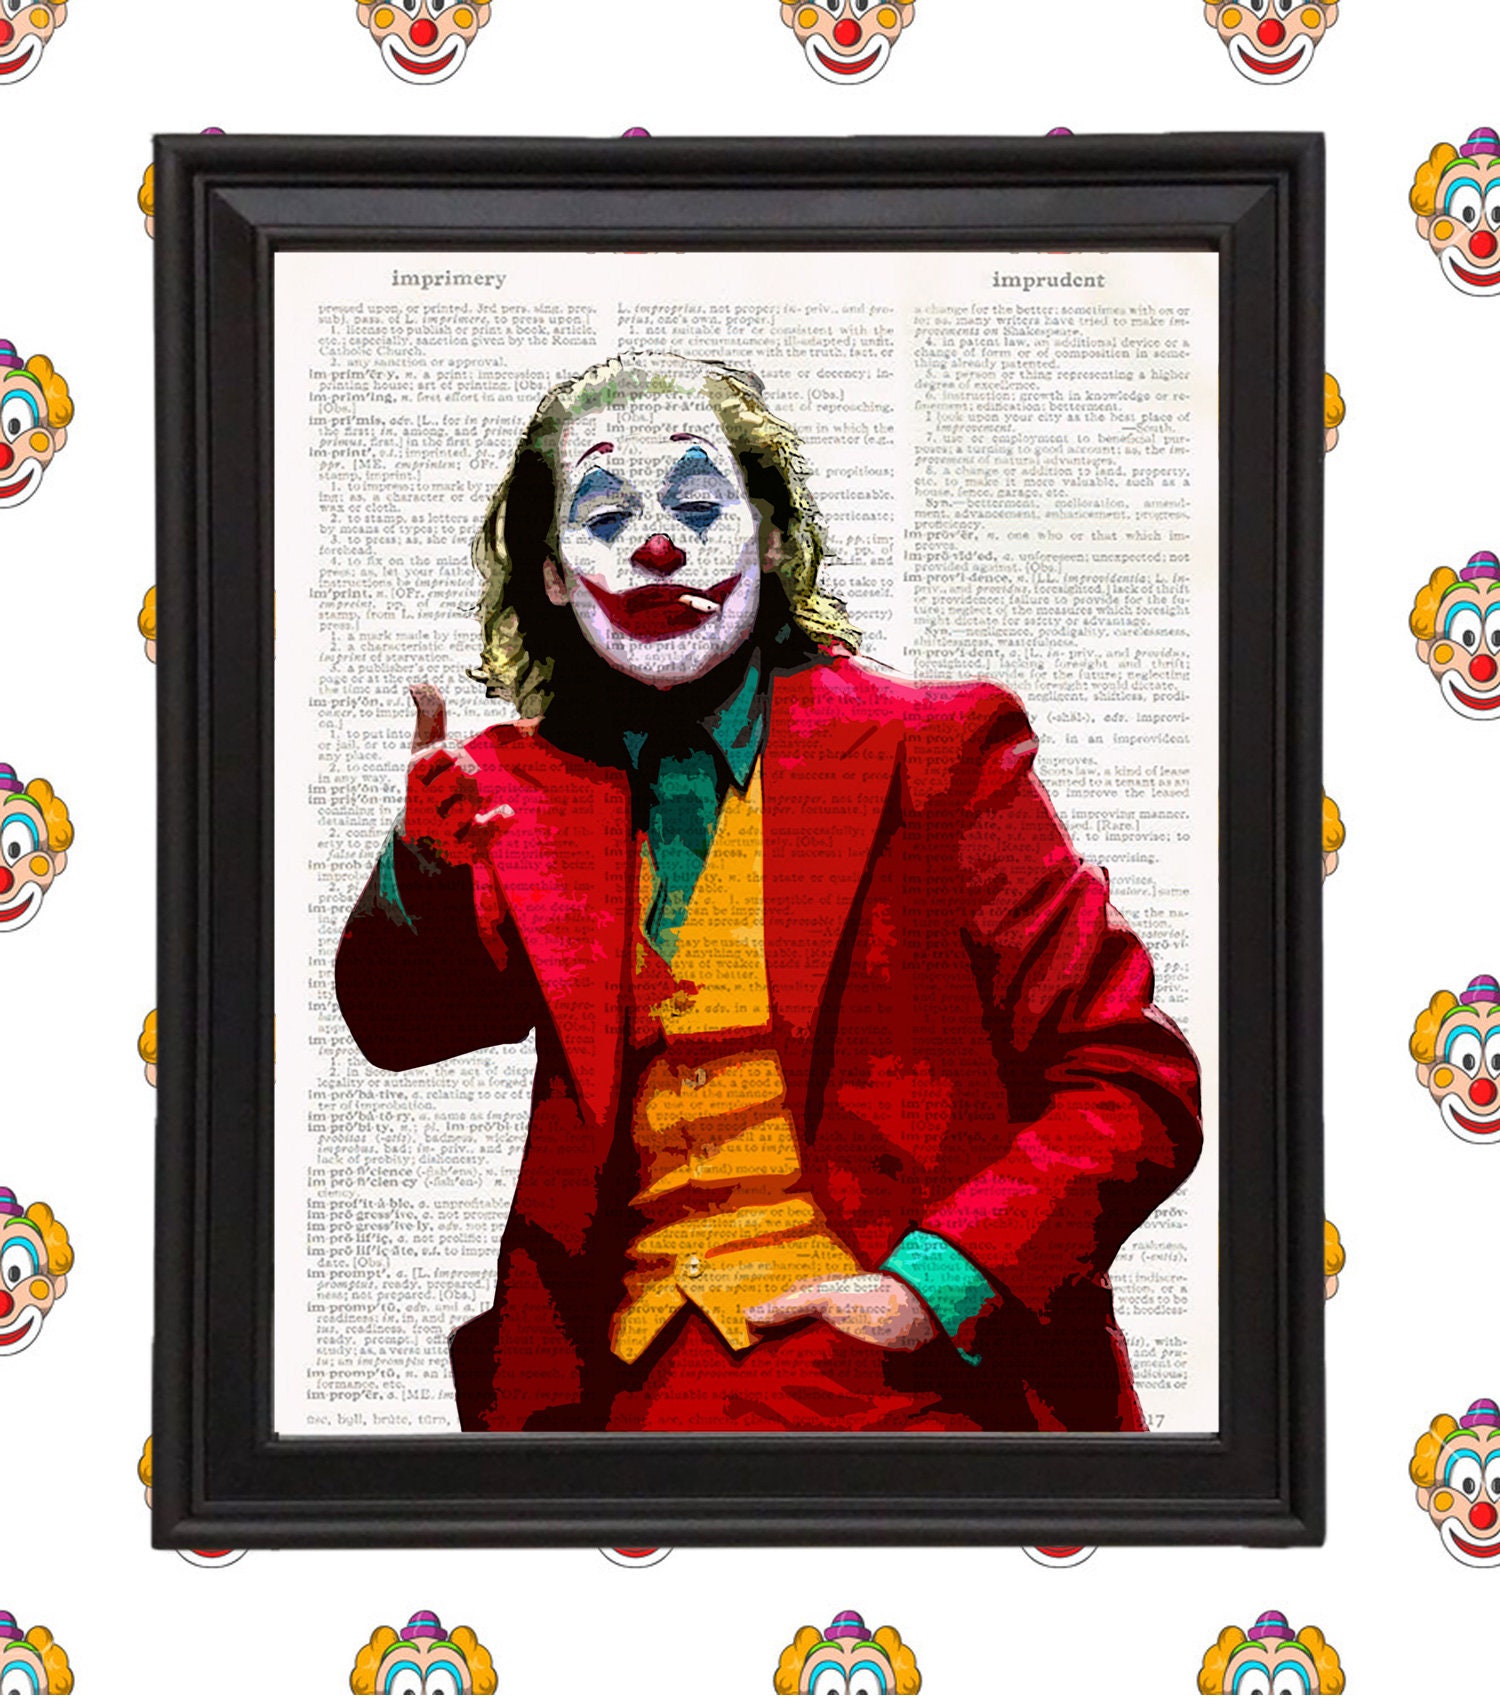 BATMAN Movie Poster FRAMED Joker Film Art Print for Home Decor Gift Ideas